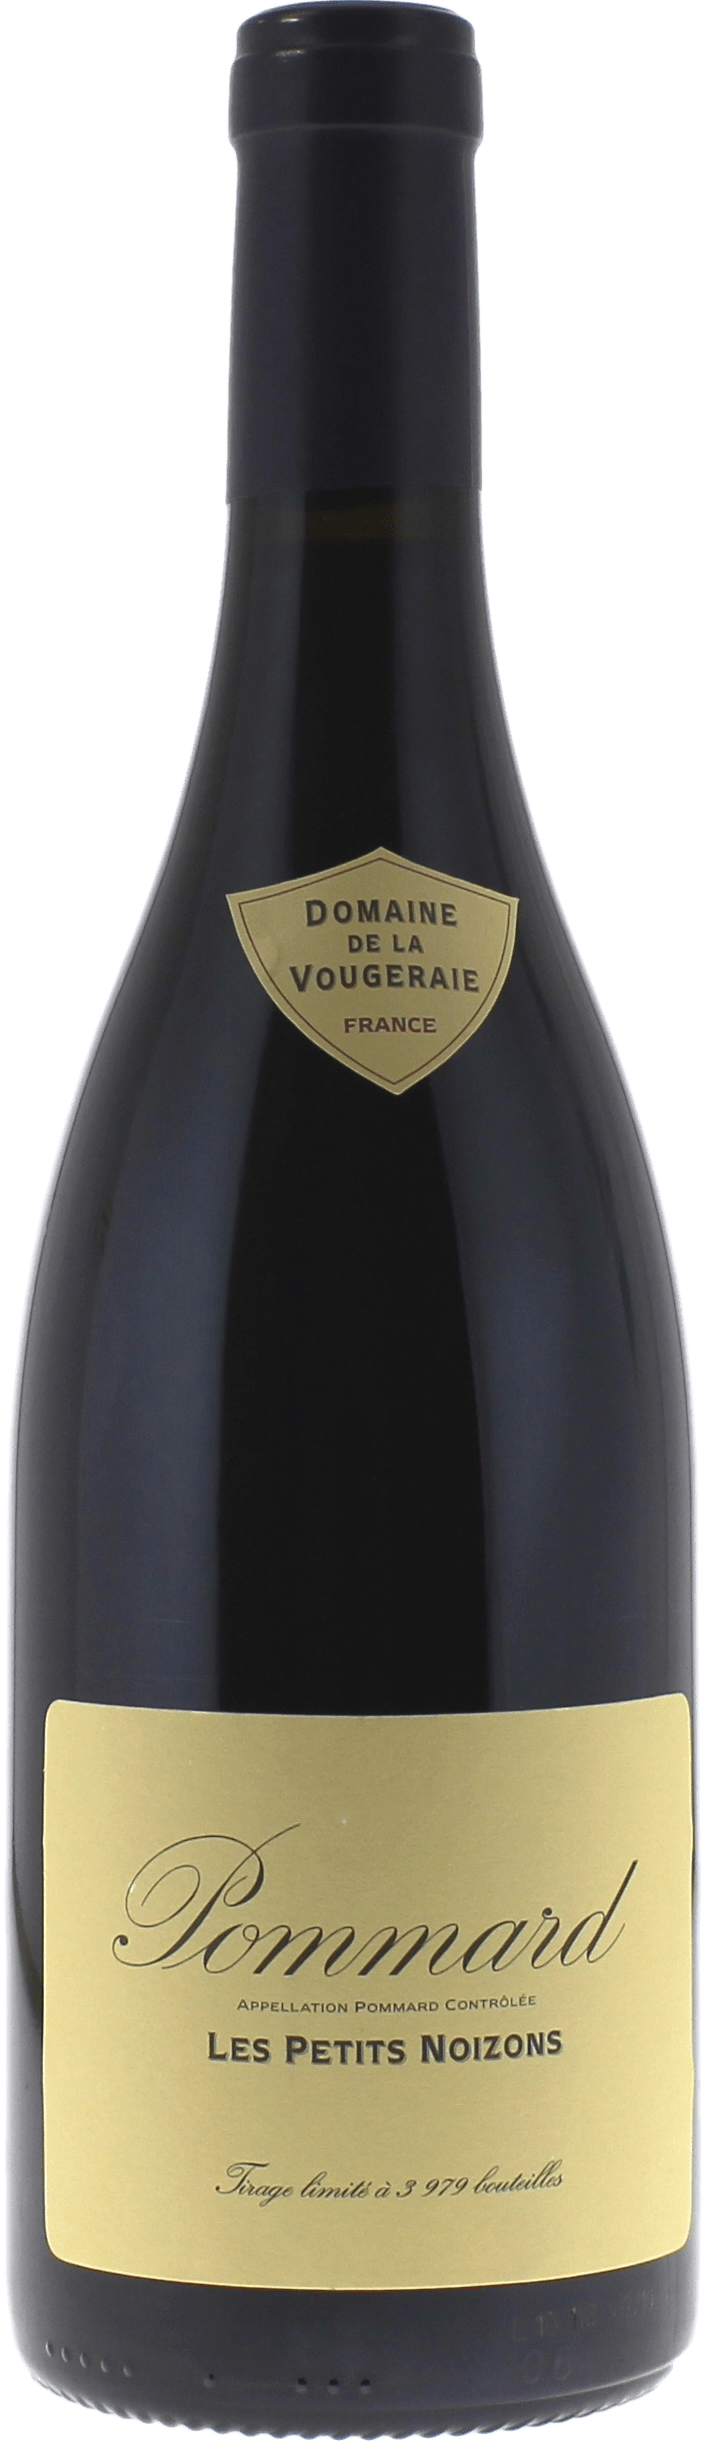 Pommard les petits noizons 2016 Domaine VOUGERAIE, Bourgogne rouge